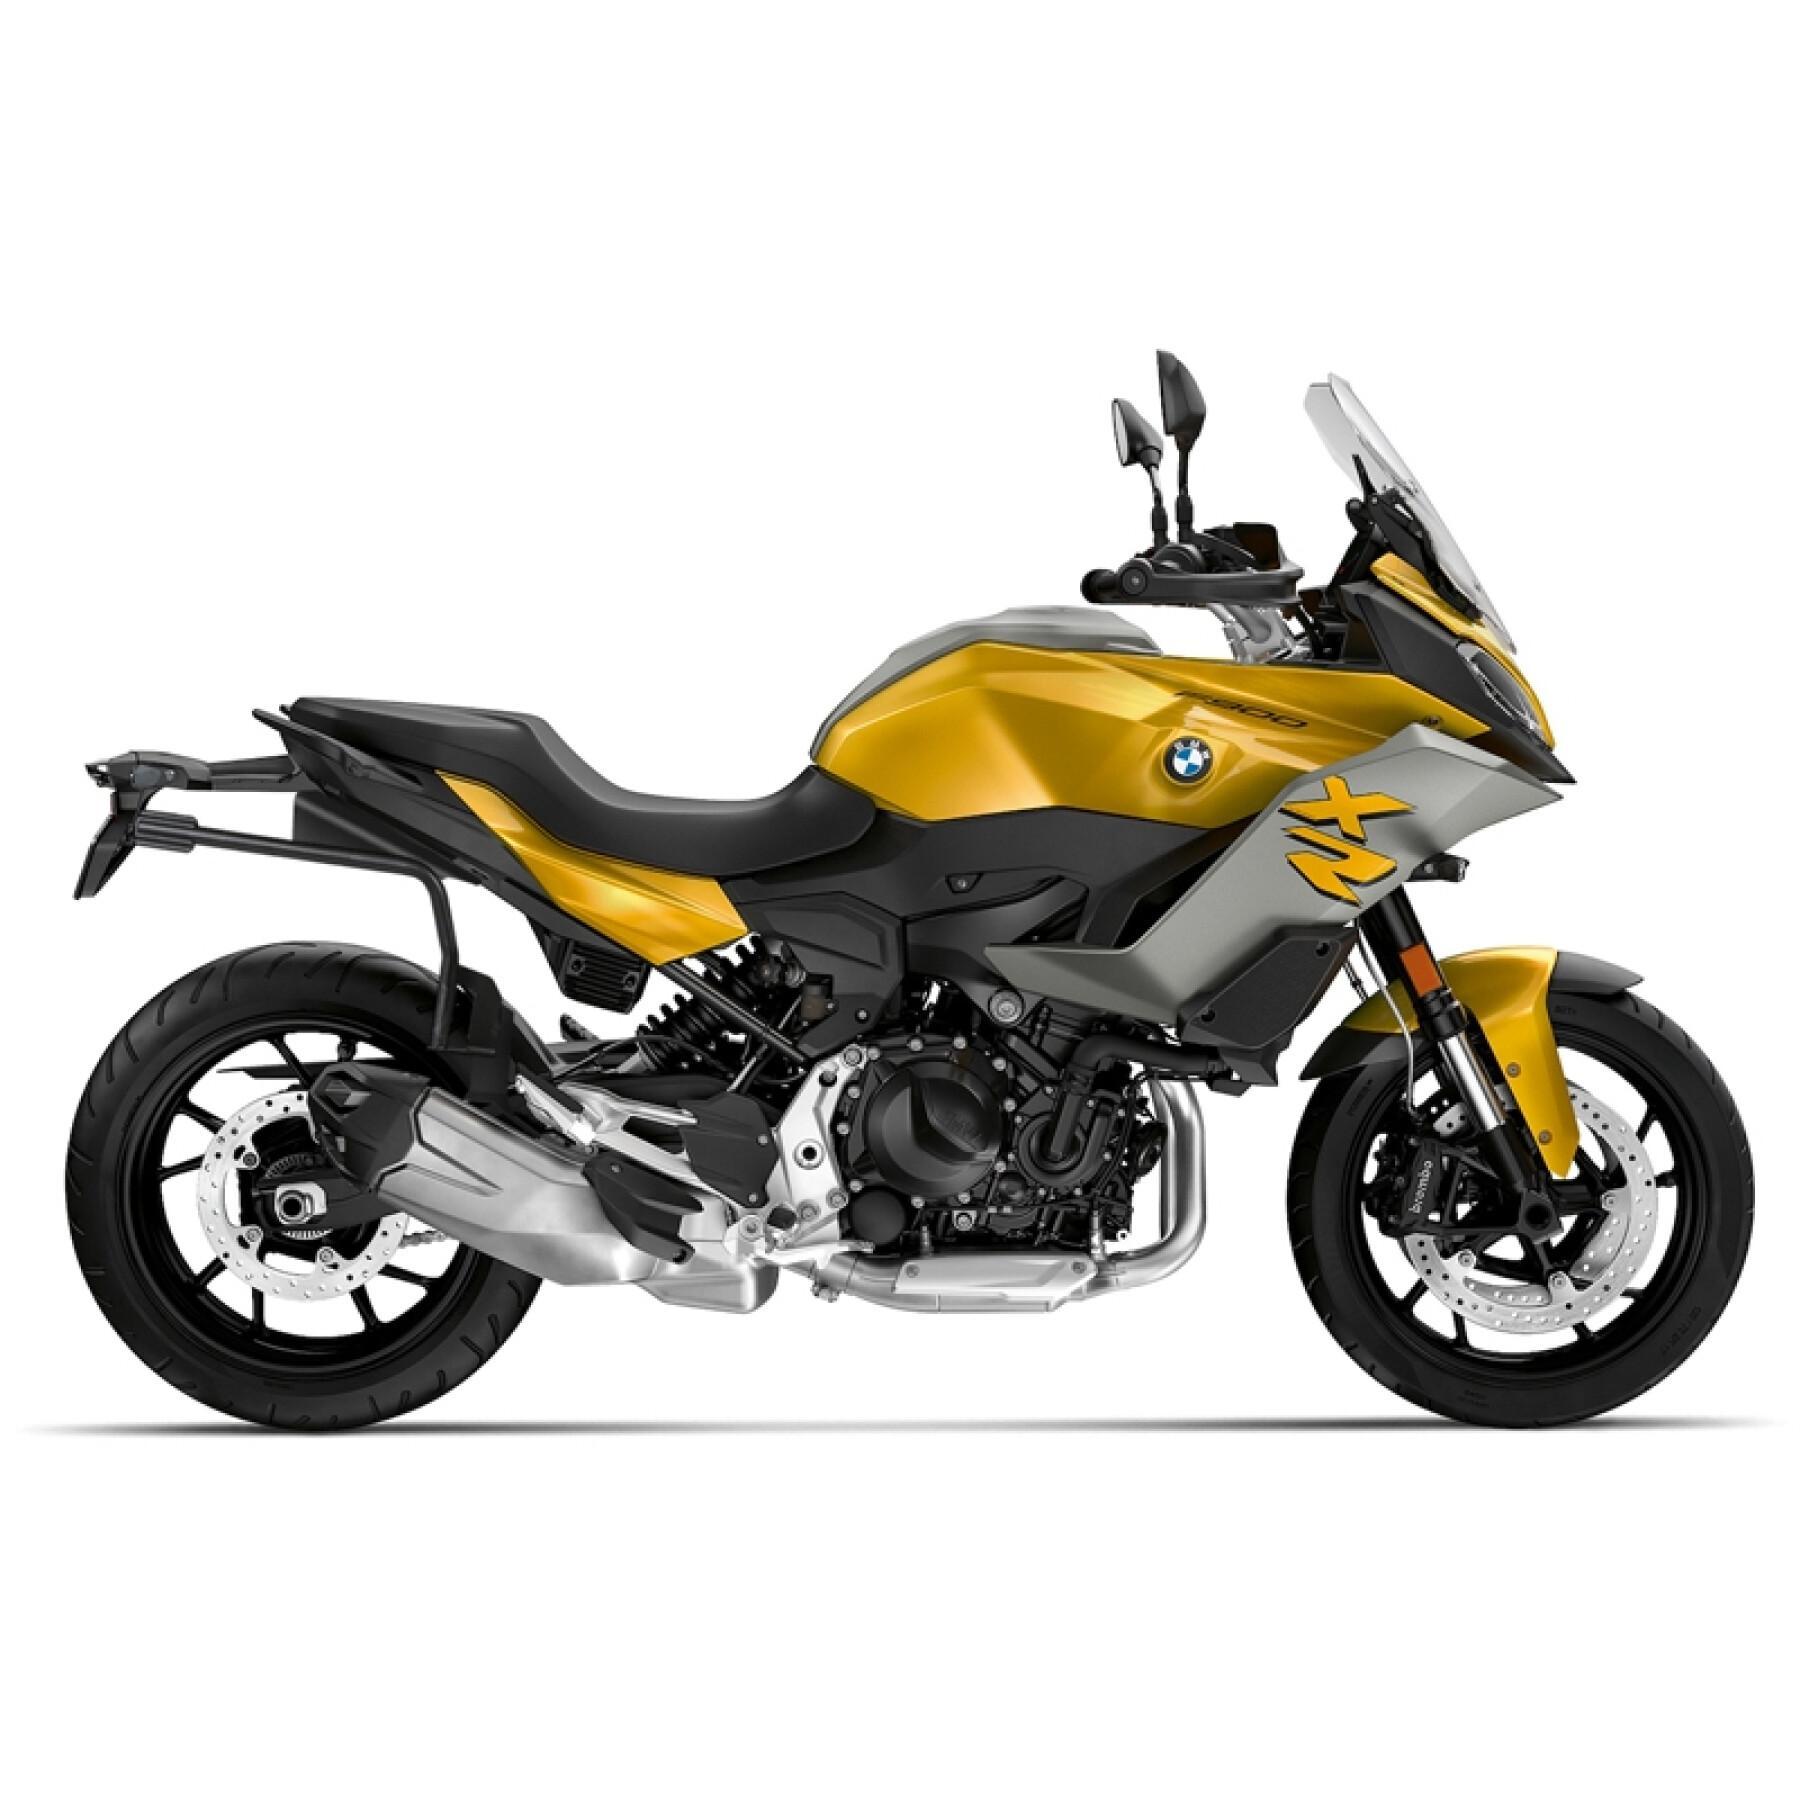 Apoio de caixa lateral de motocicleta Shad 3P System Bmw F900 X/Xr 2020-2020